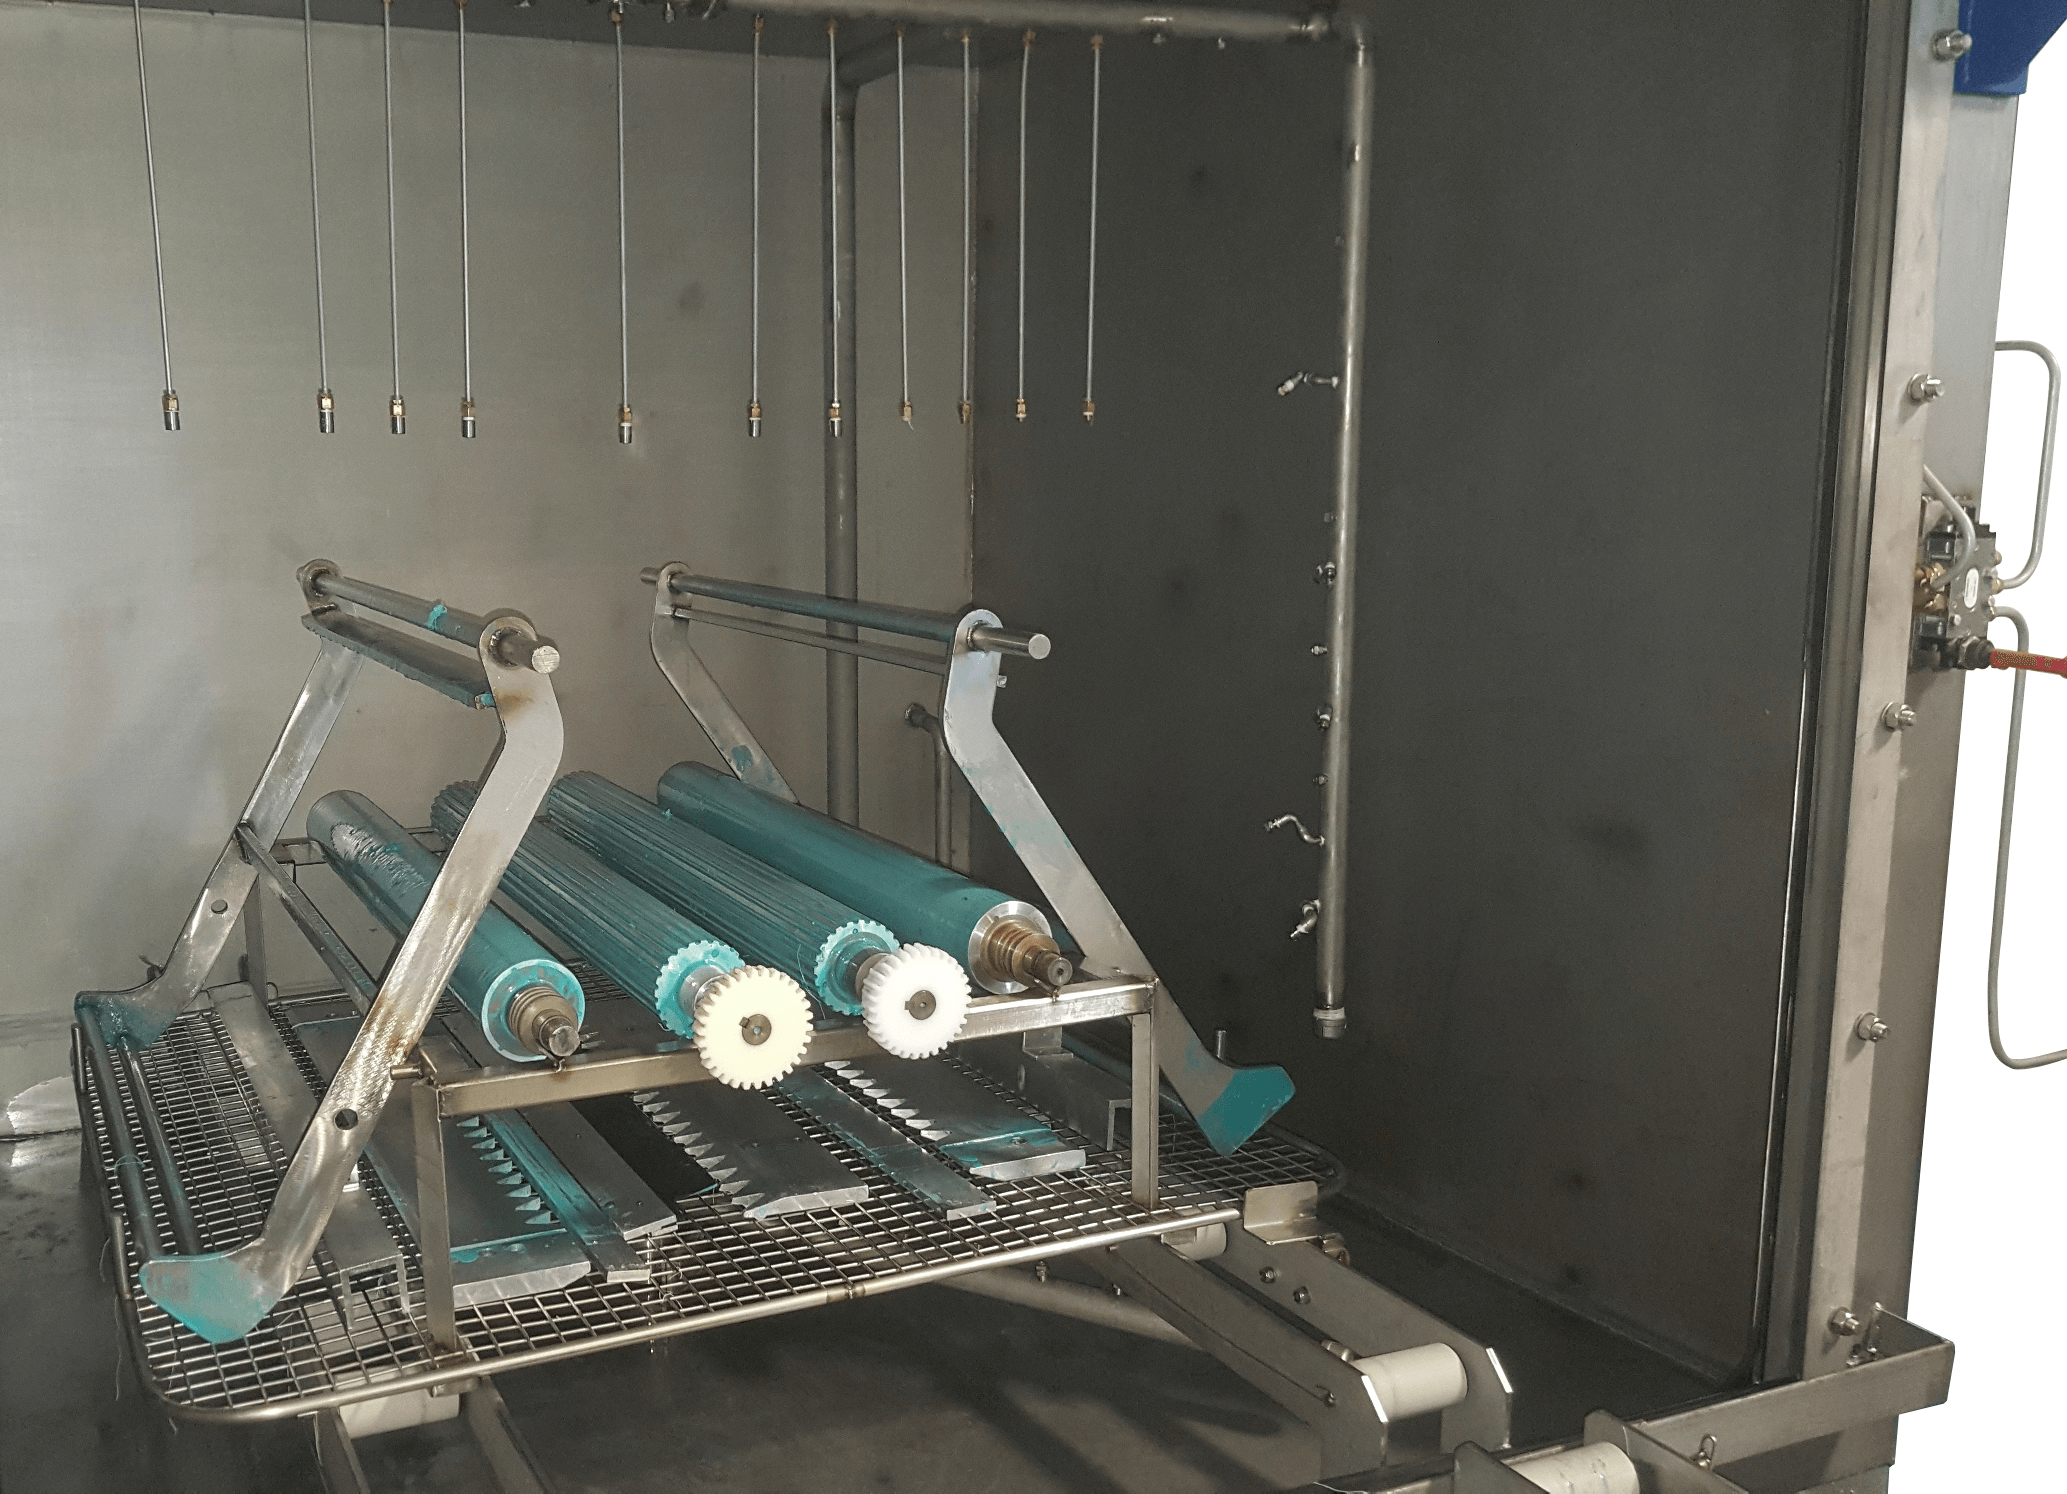 Machine parts being decontaminated in ATEX washer